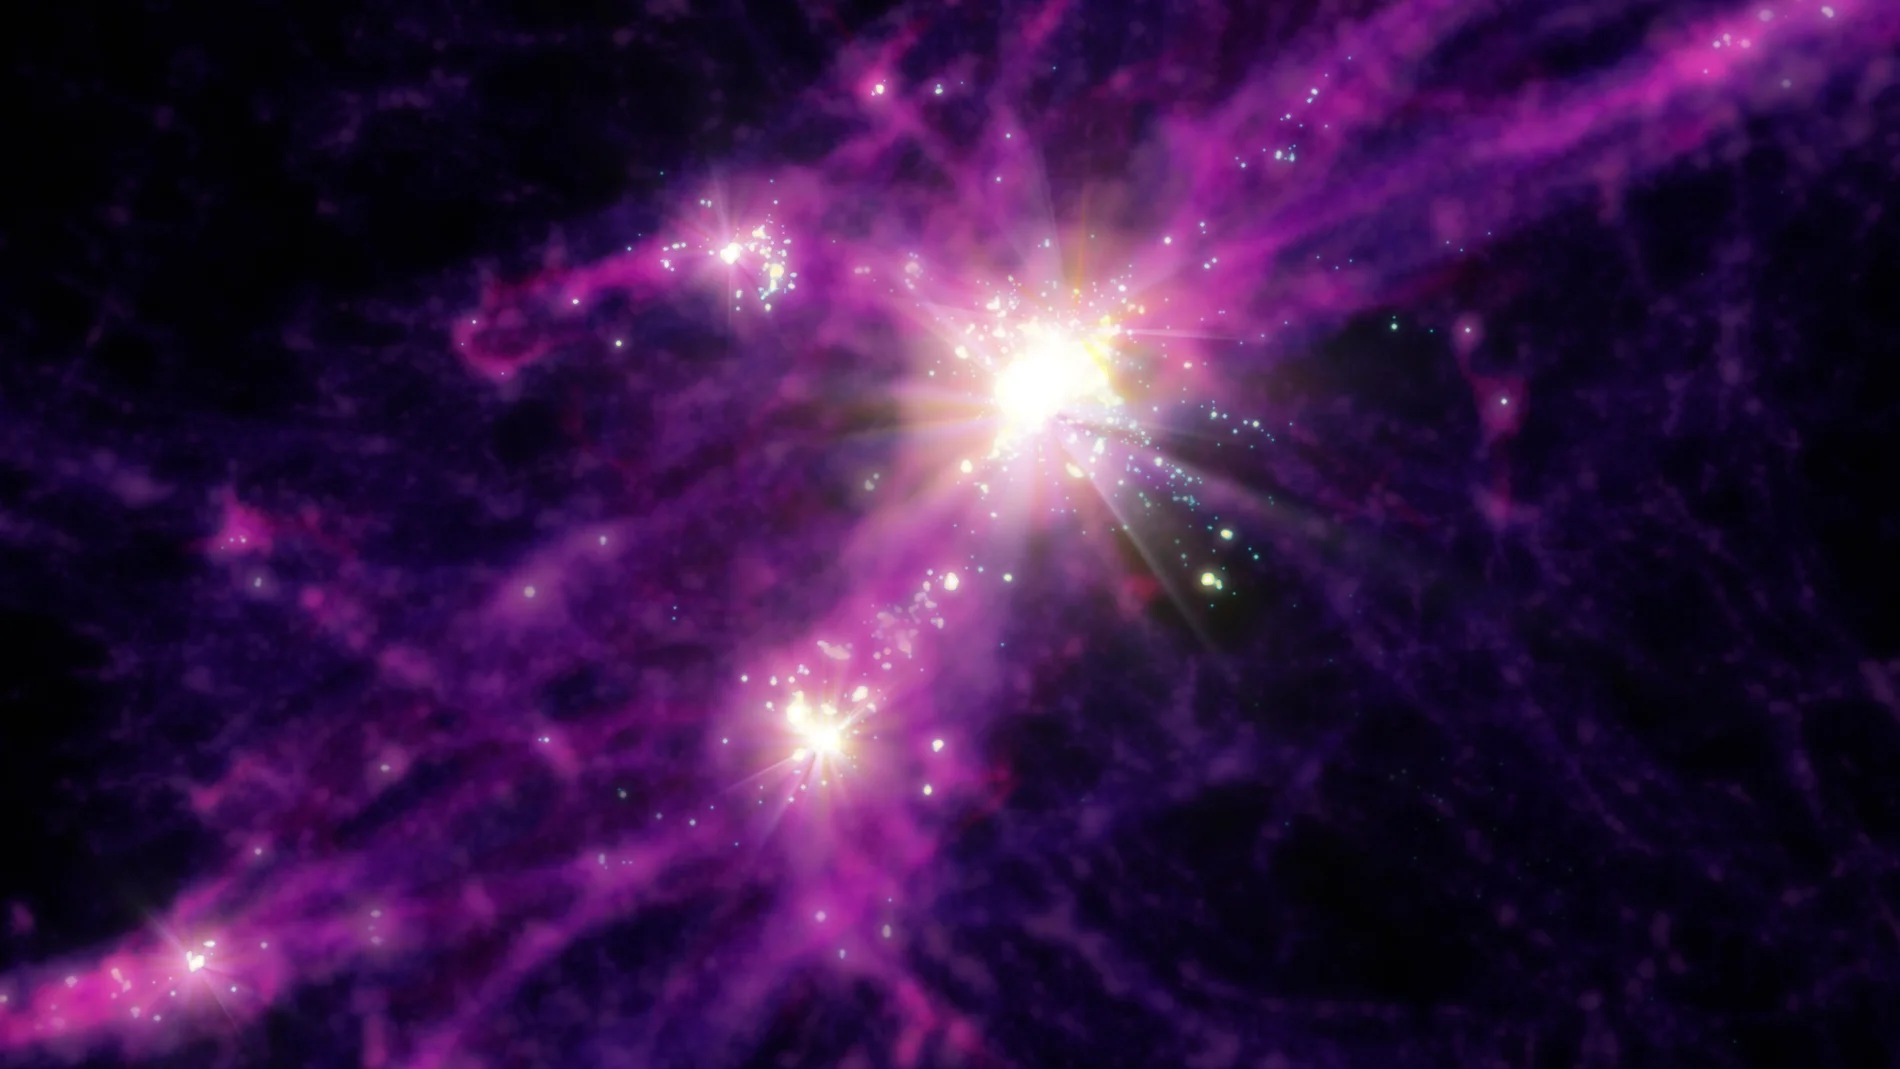 Concepto artístico de las primeras galaxias. La imagen se ha obtenido a partir de los datos de simulación utilizados para esta investigación, que pueden explicar los resultados recientes del Telescopio Espacial James Webb. Las estrellas y galaxias se muestran en los puntos de luz blanca brillante, mientras que la materia oscura más difusa y el gas se muestran en morados y rojos.